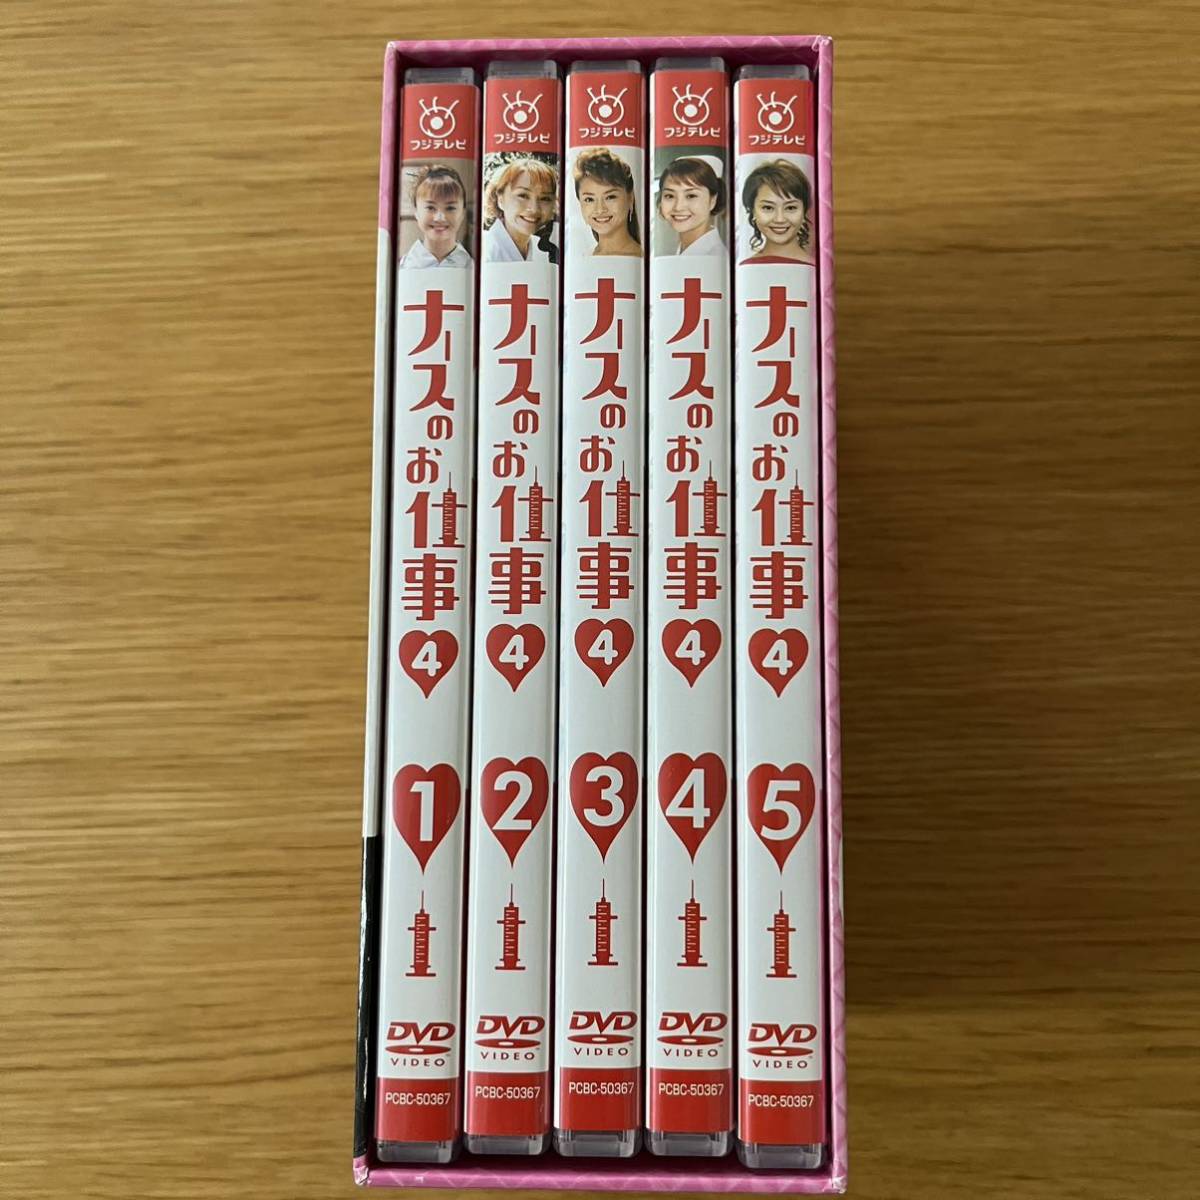 ナースのお仕事4 DVD-BOX〈5枚組〉観月ありさ松下由樹藤木直人安達祐実